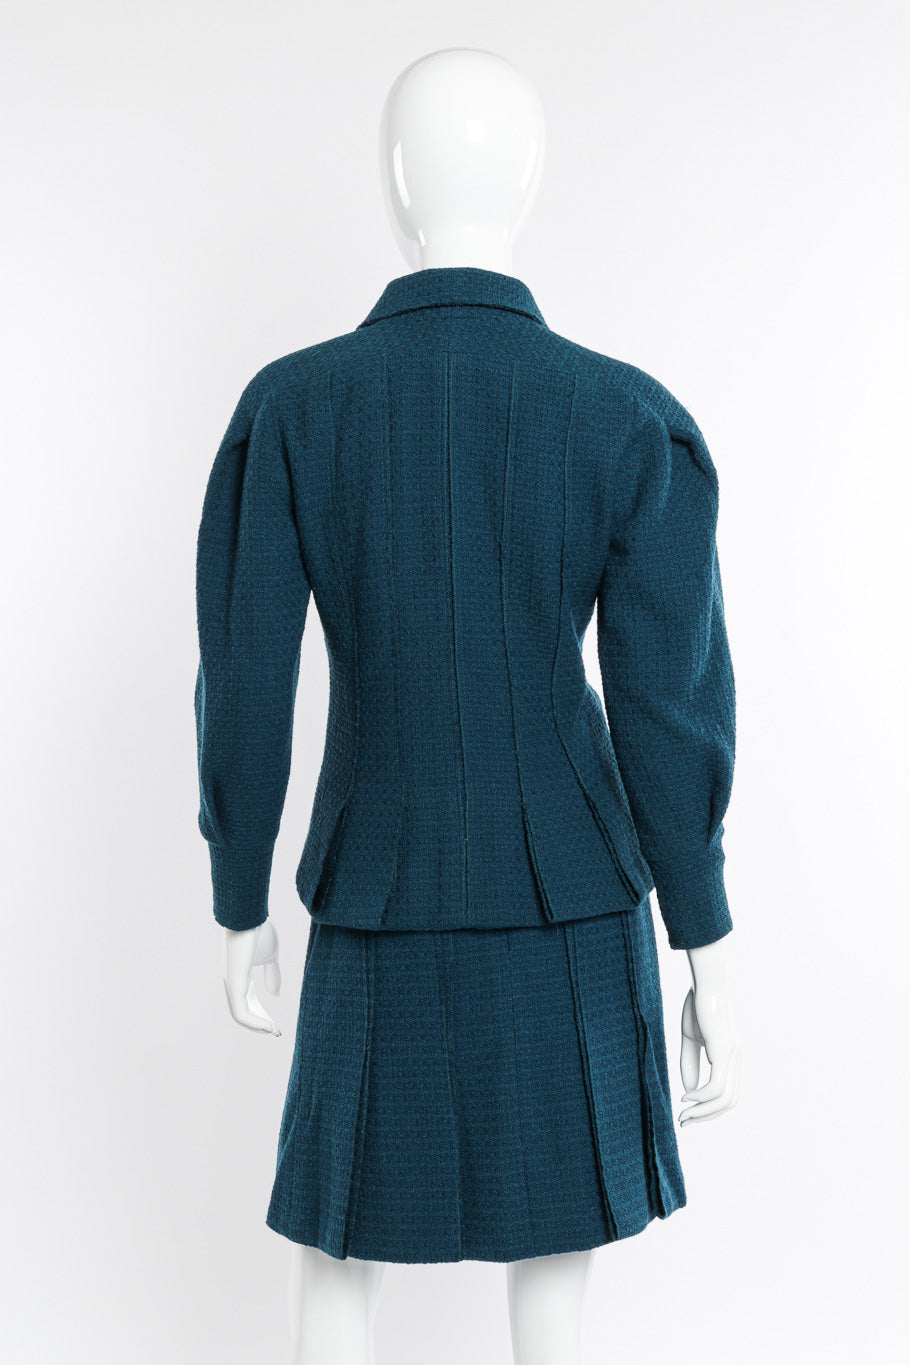 2008A Wool Carwash Hem Jacket & Skirt Set back view on mannequin @Recessla